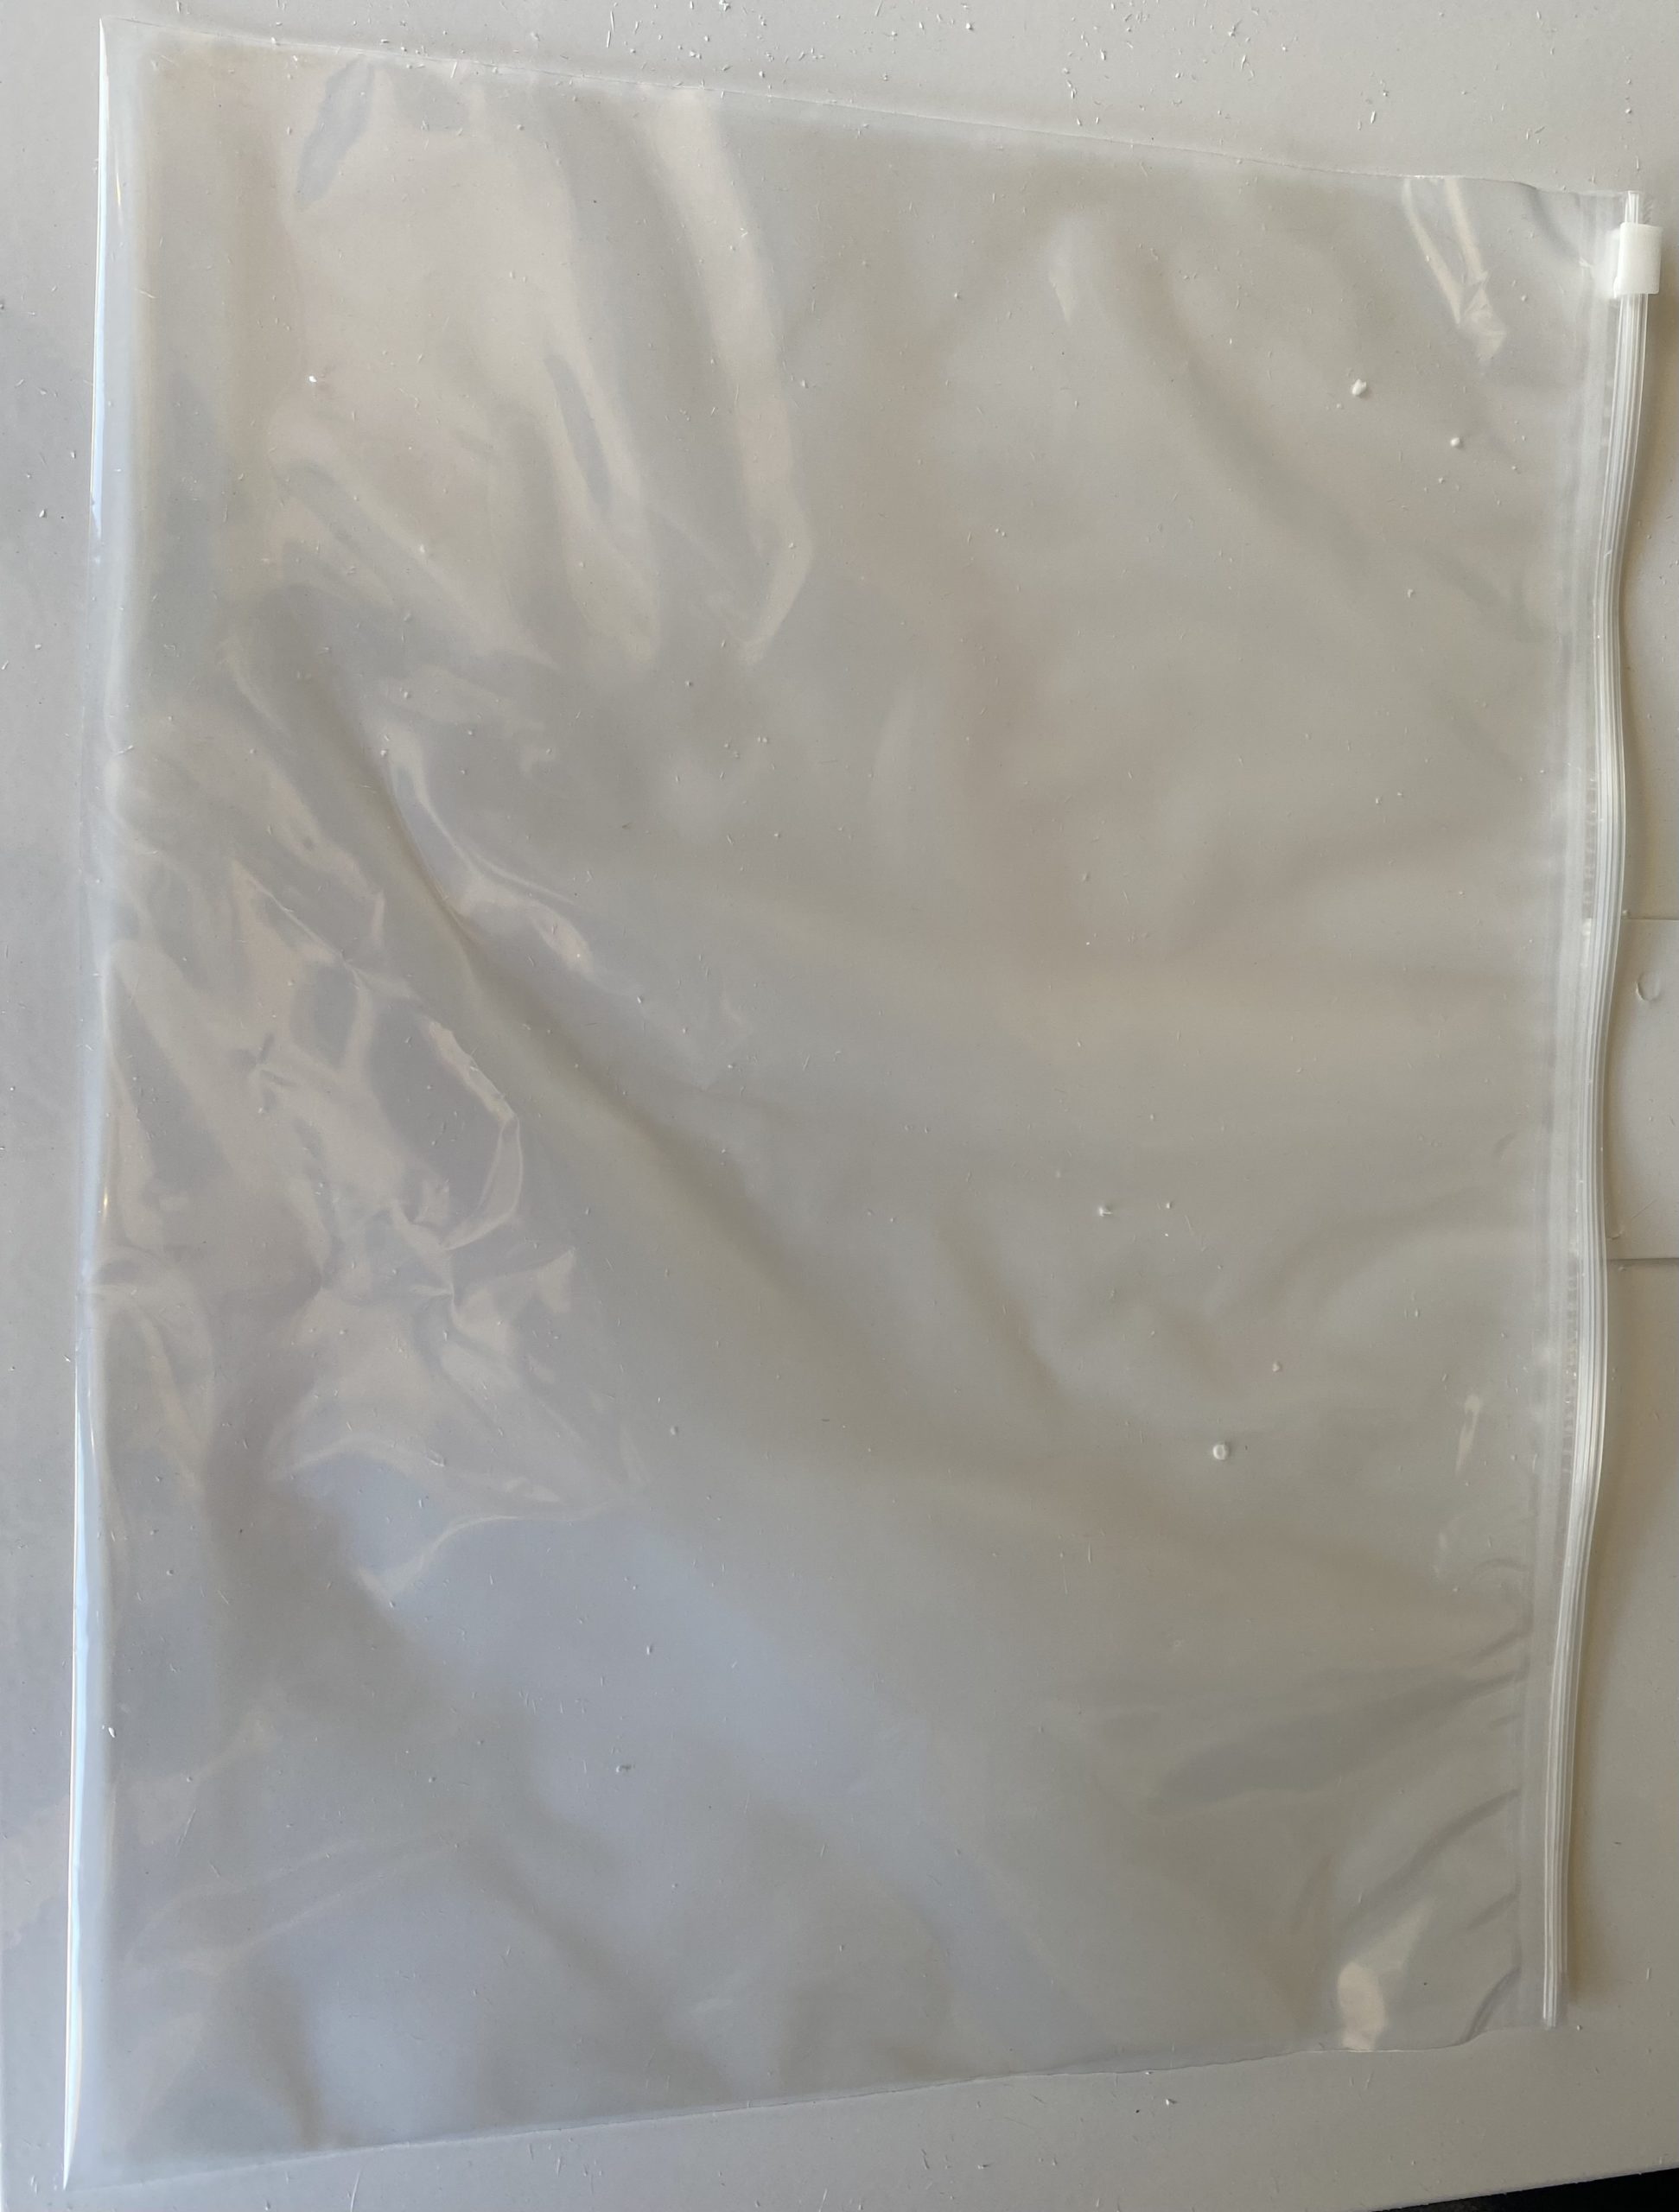 Large ziplock pathology bags